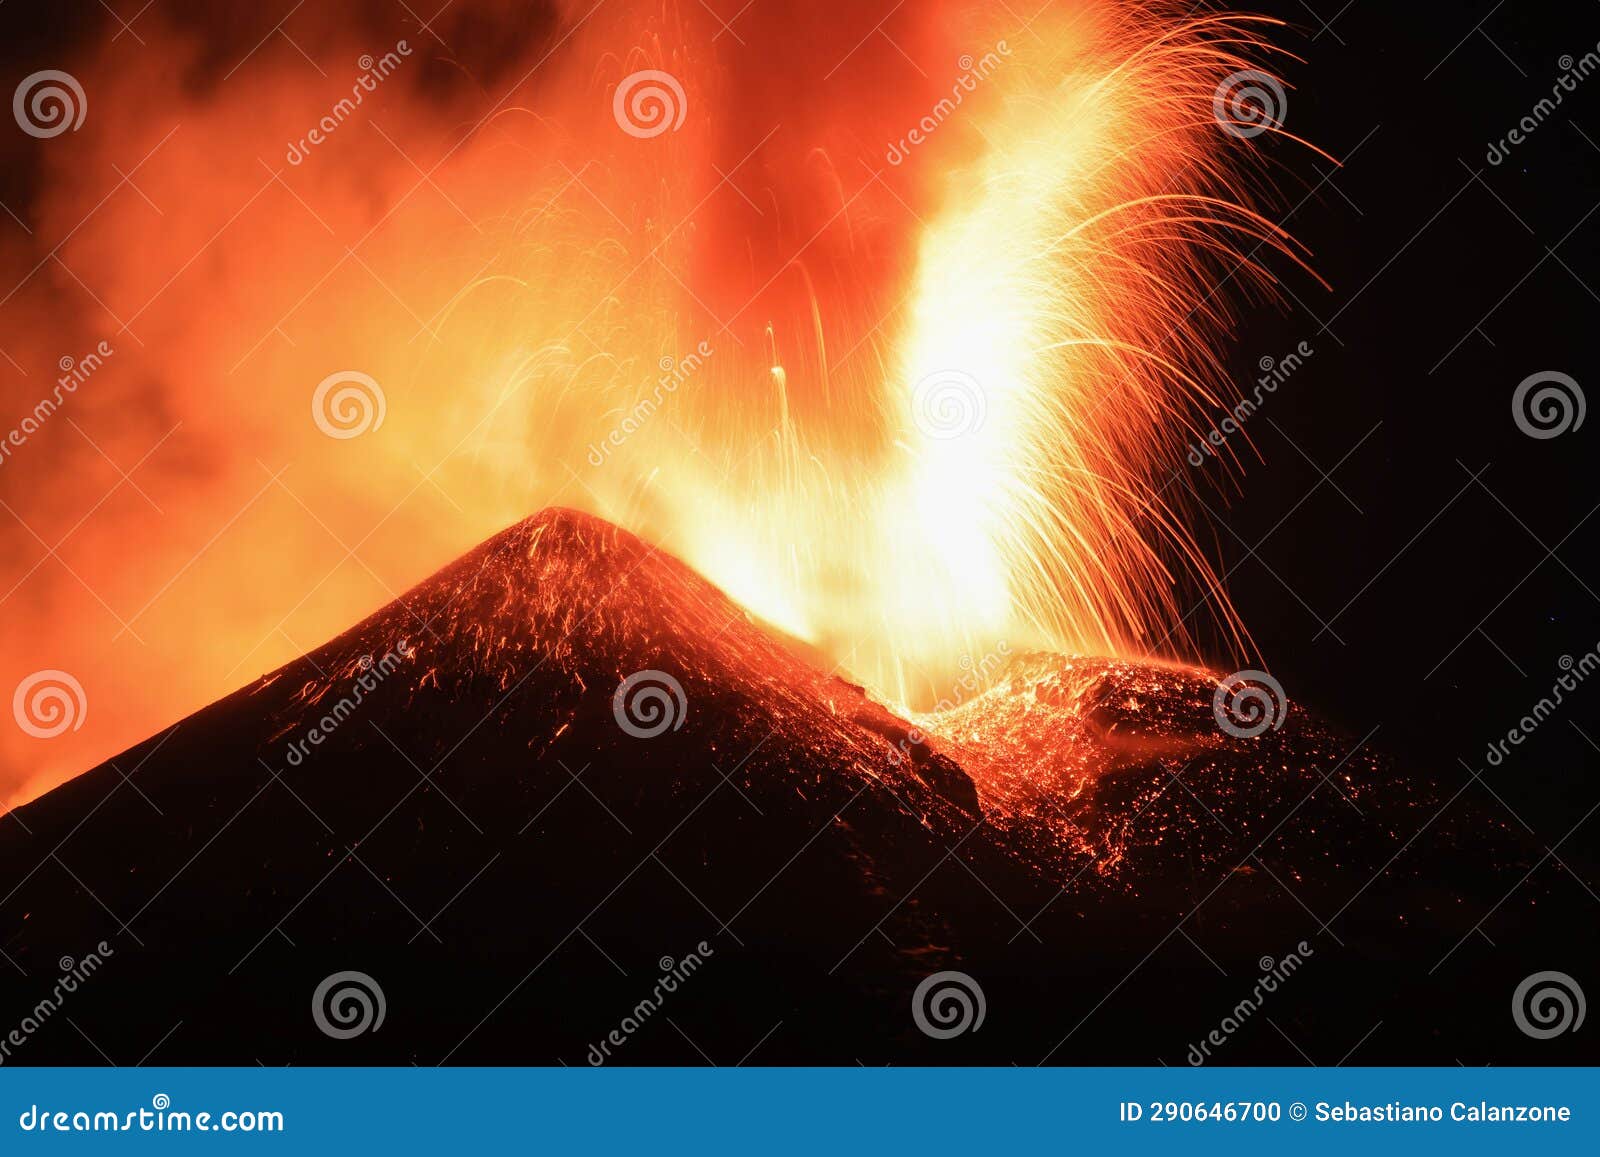 etna - enorme esplosione di magma e lava dal cratere del vulcano di sicilia vista di notte